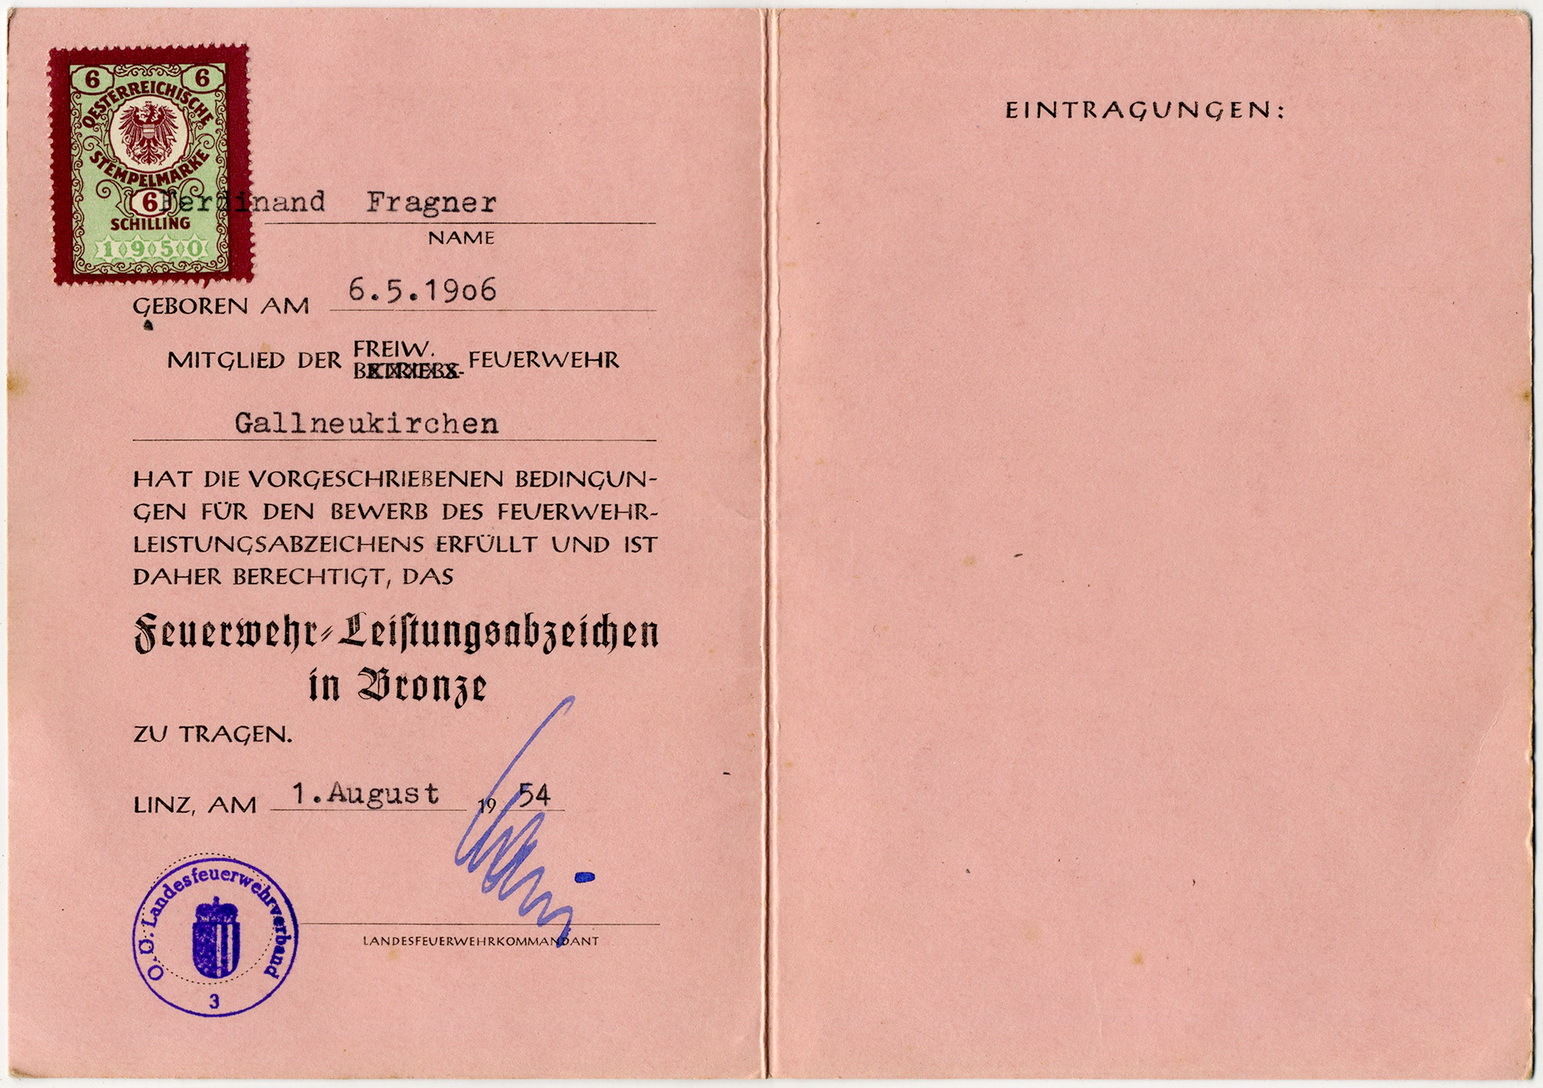 1954 FLAB Urkunde 2